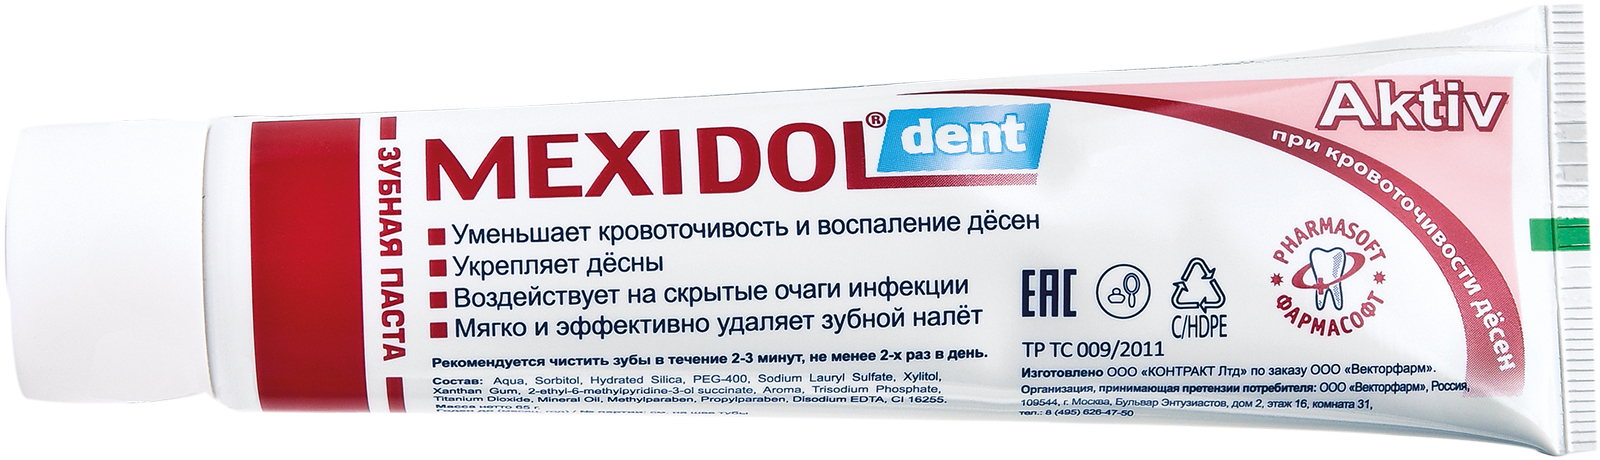 Мексидол Дент Актив, зубная паста, 100 г мексидол дент актив зубная паста 65 г